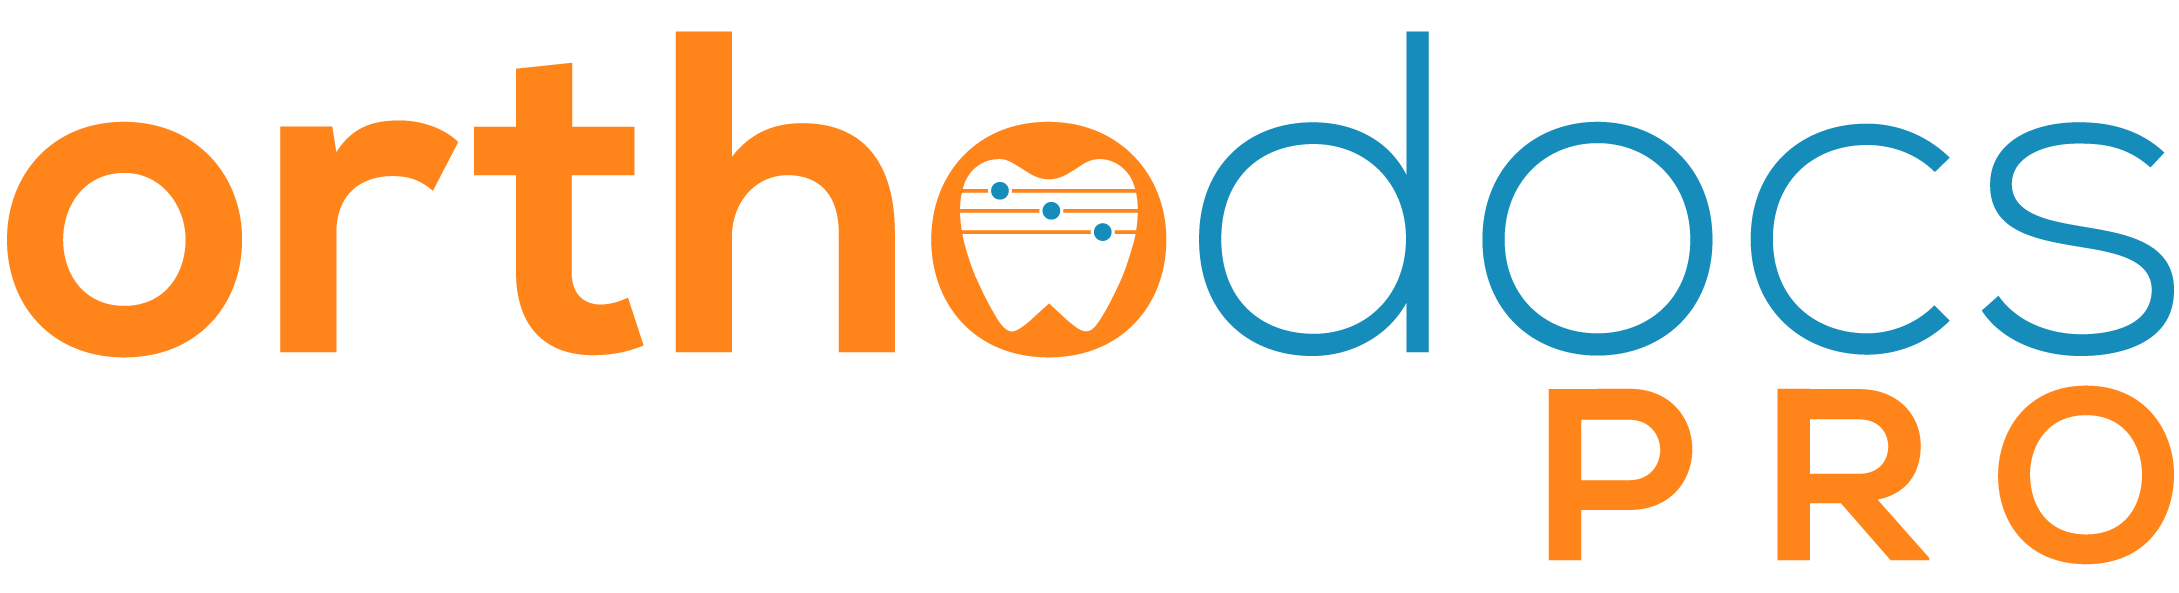 orthodocsPro Logo